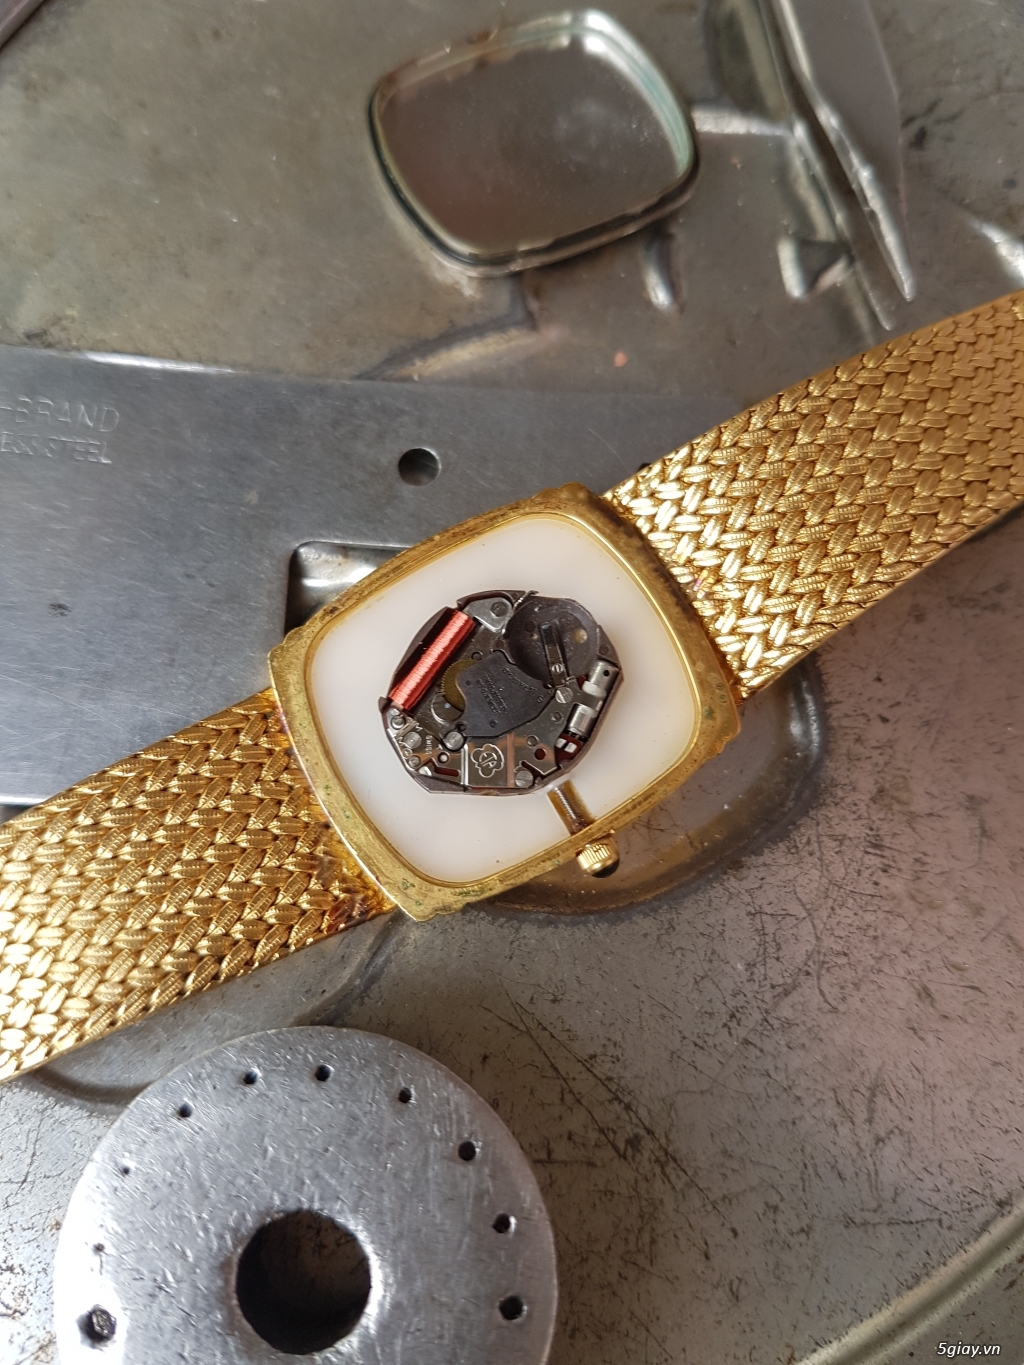 Sửa chữa, thay pin & đánh bóng, làm mới đẹp các loại đồng hồ đeo tay - 48